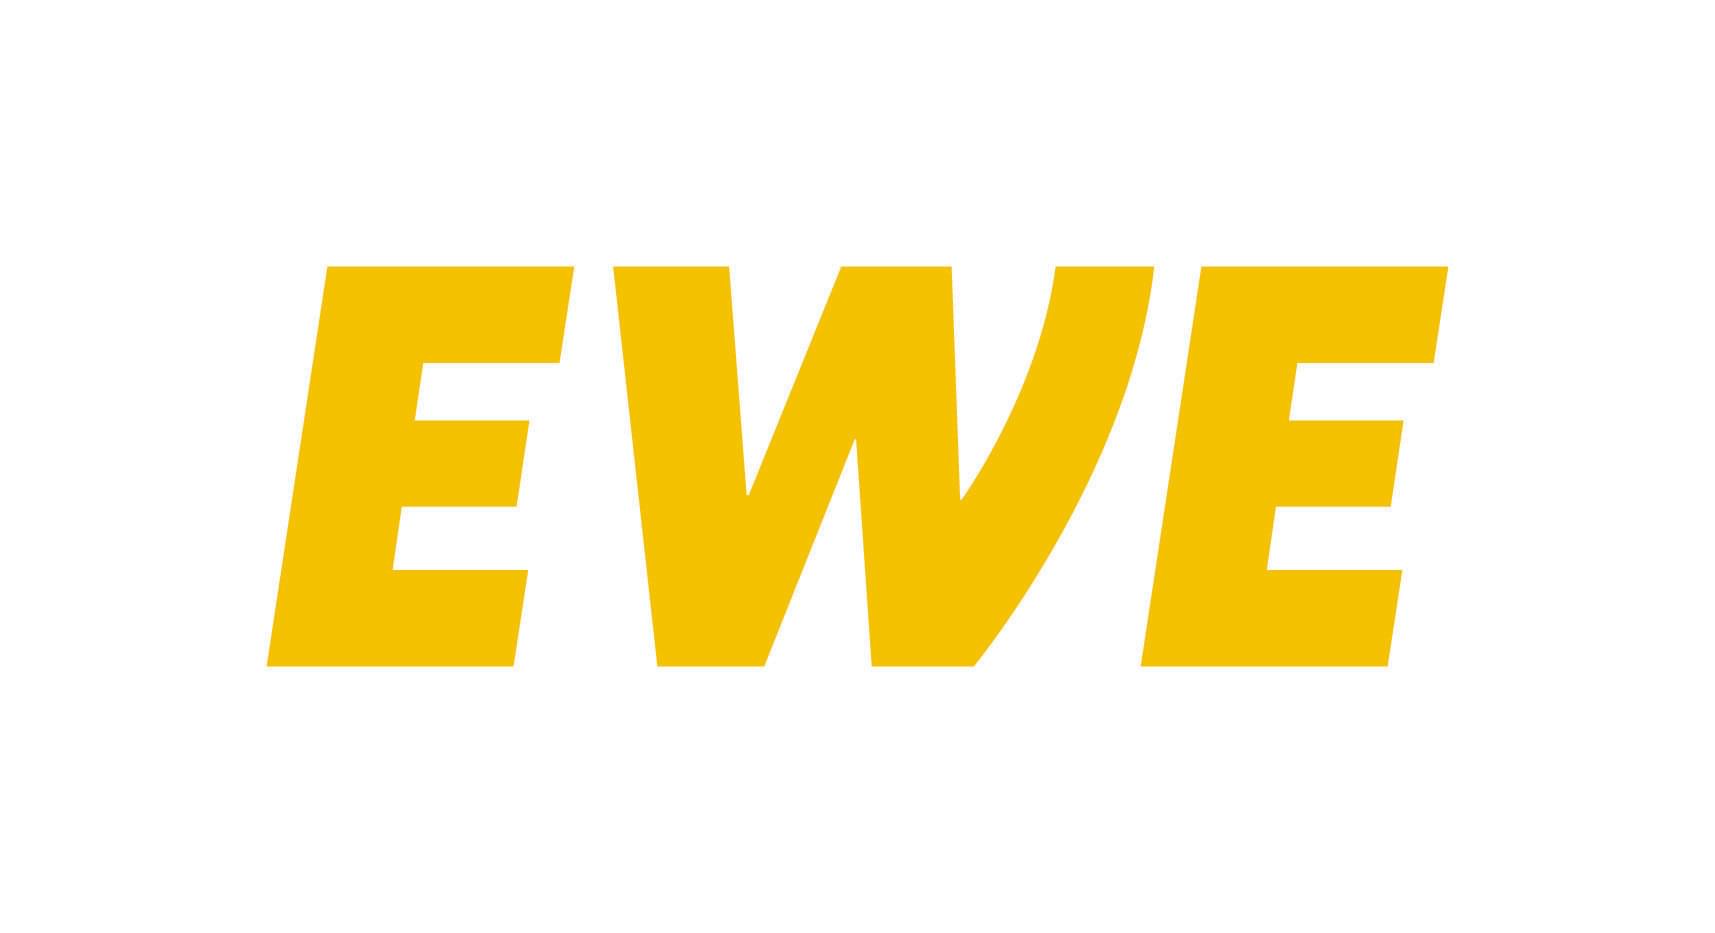 Logo EWE